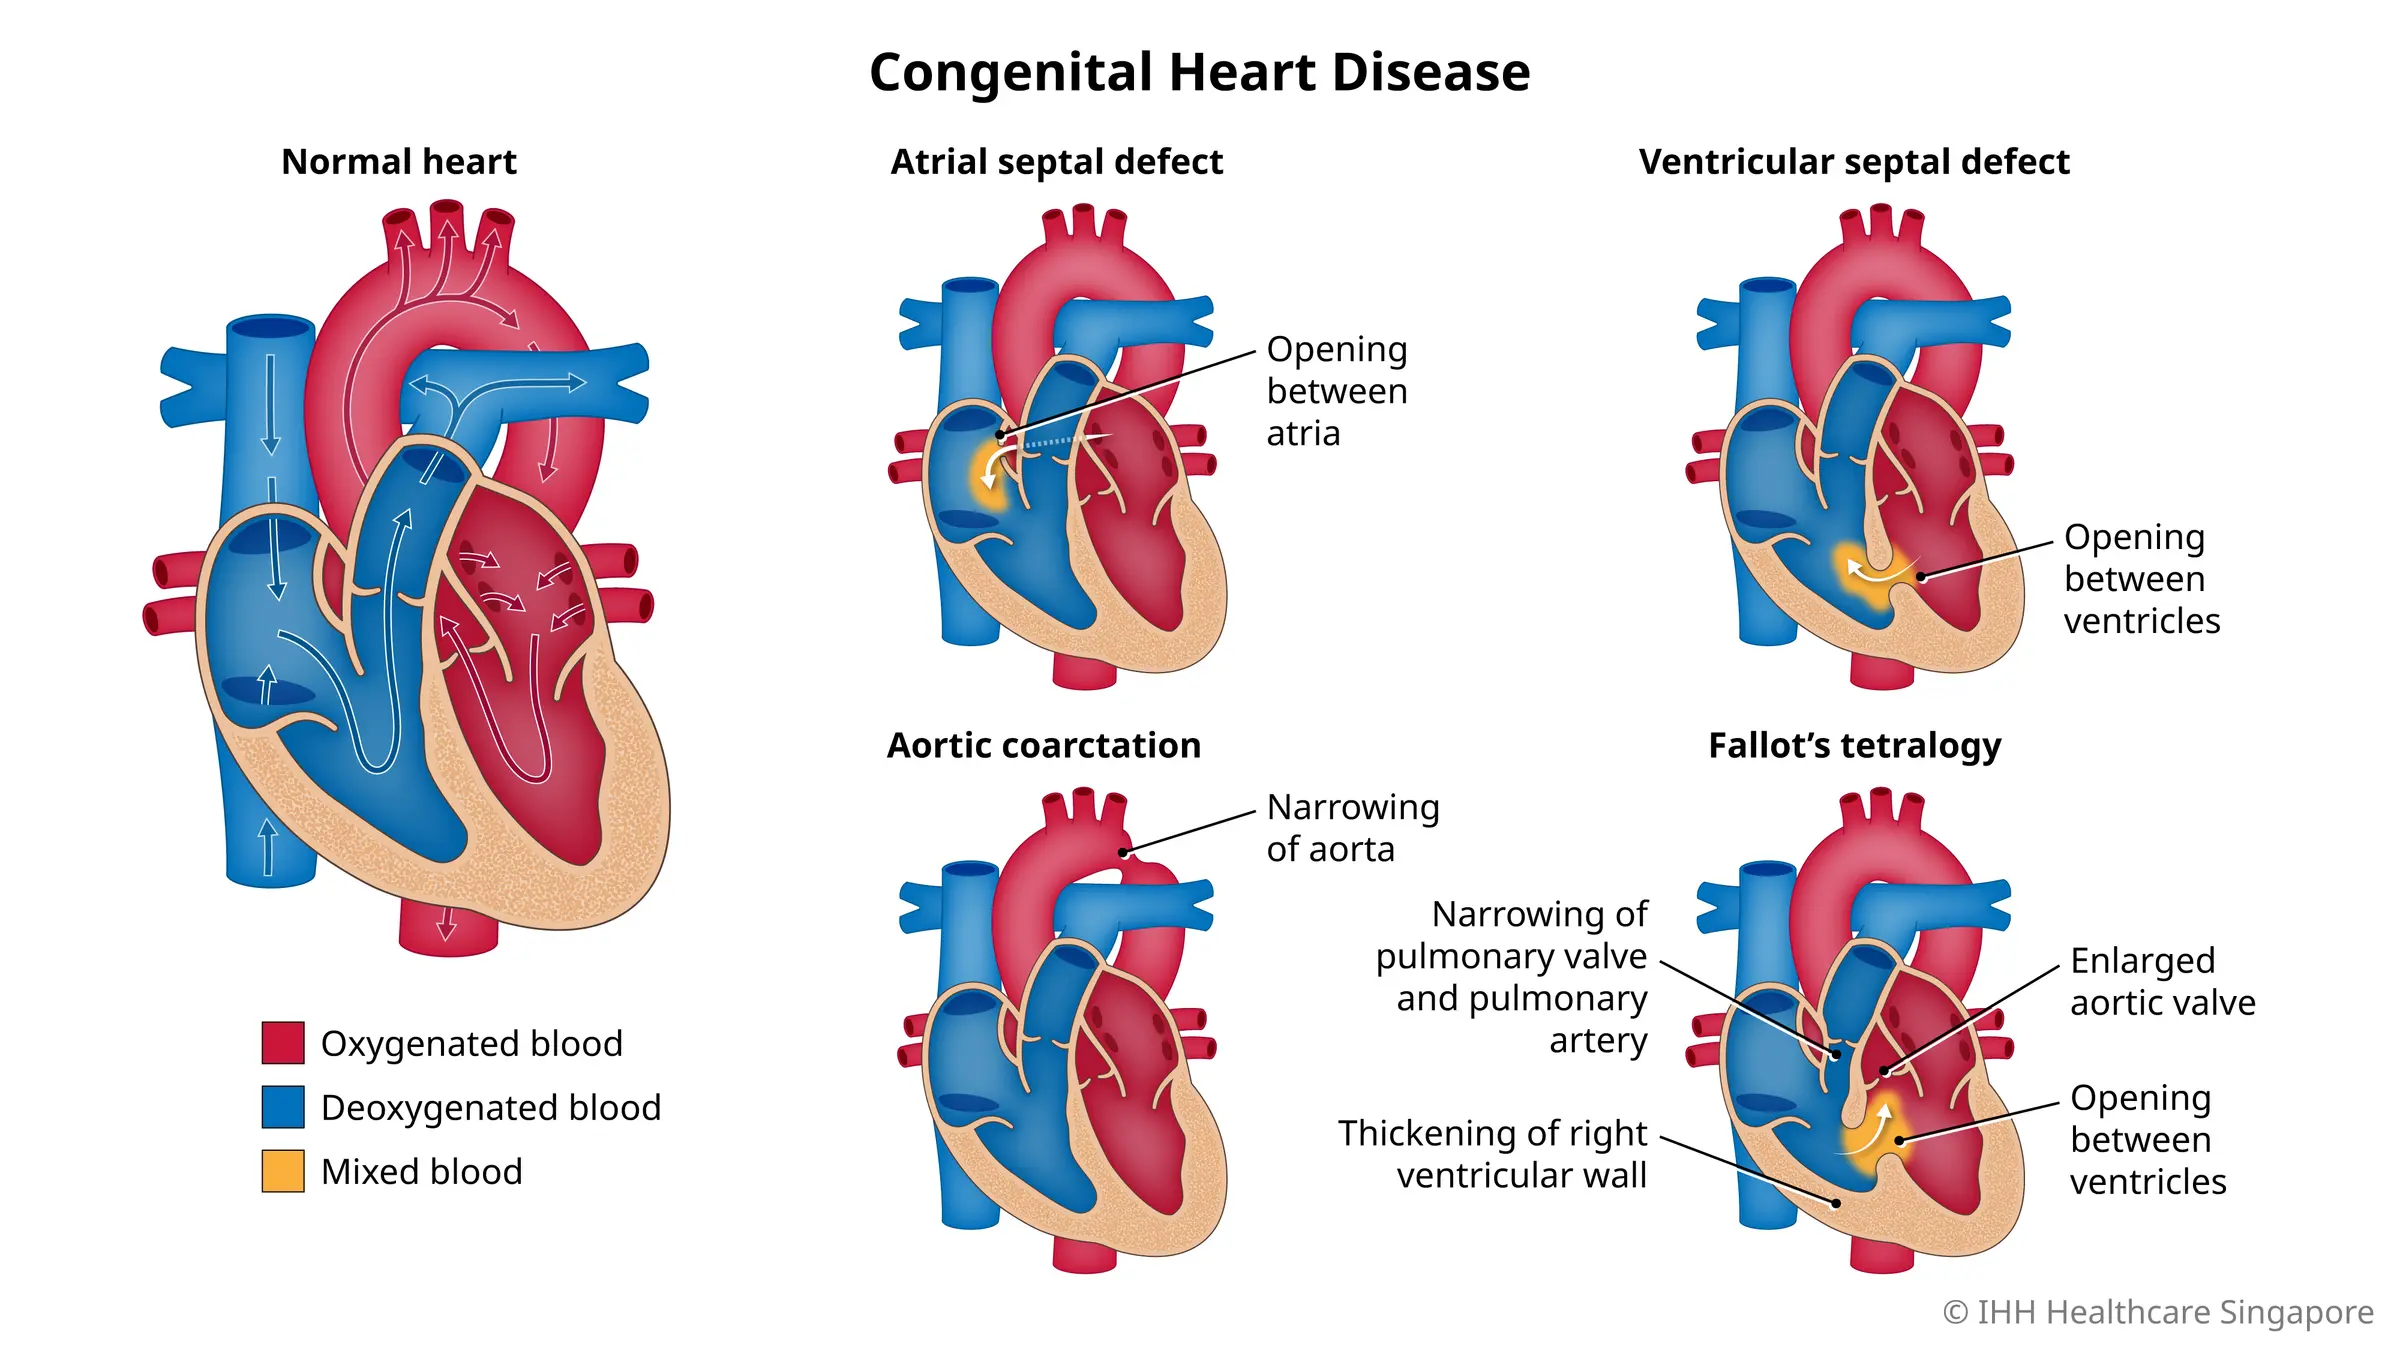 先天性心脏病包括一系列自出生起就存在的心脏缺陷，严重程度各不相同。